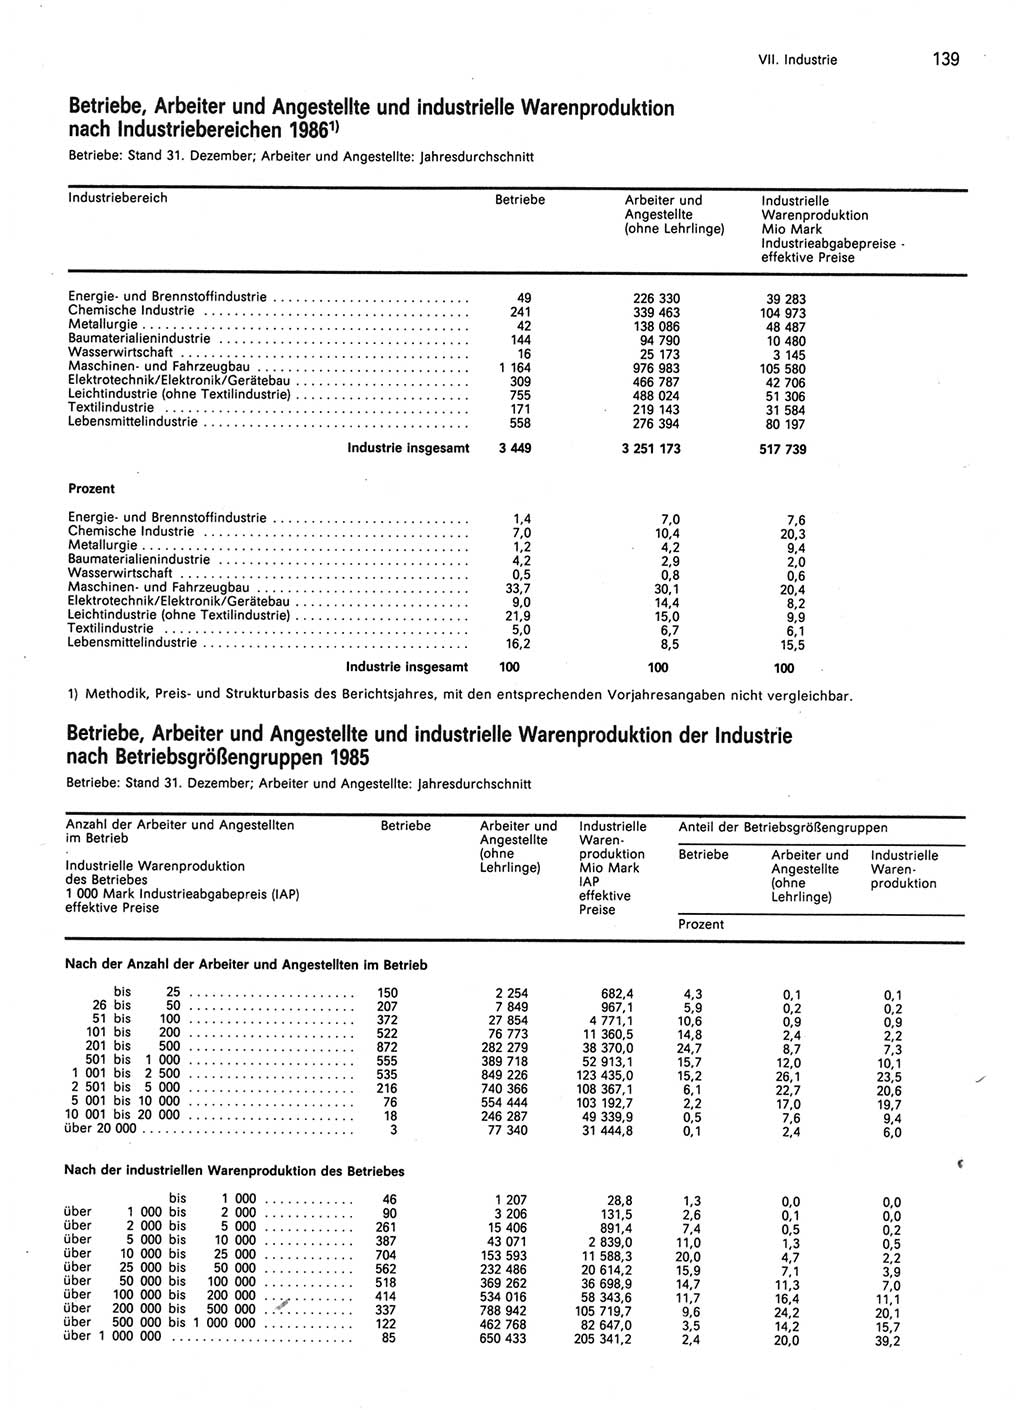 Statistisches Jahrbuch der Deutschen Demokratischen Republik (DDR) 1987, Seite 139 (Stat. Jb. DDR 1987, S. 139)